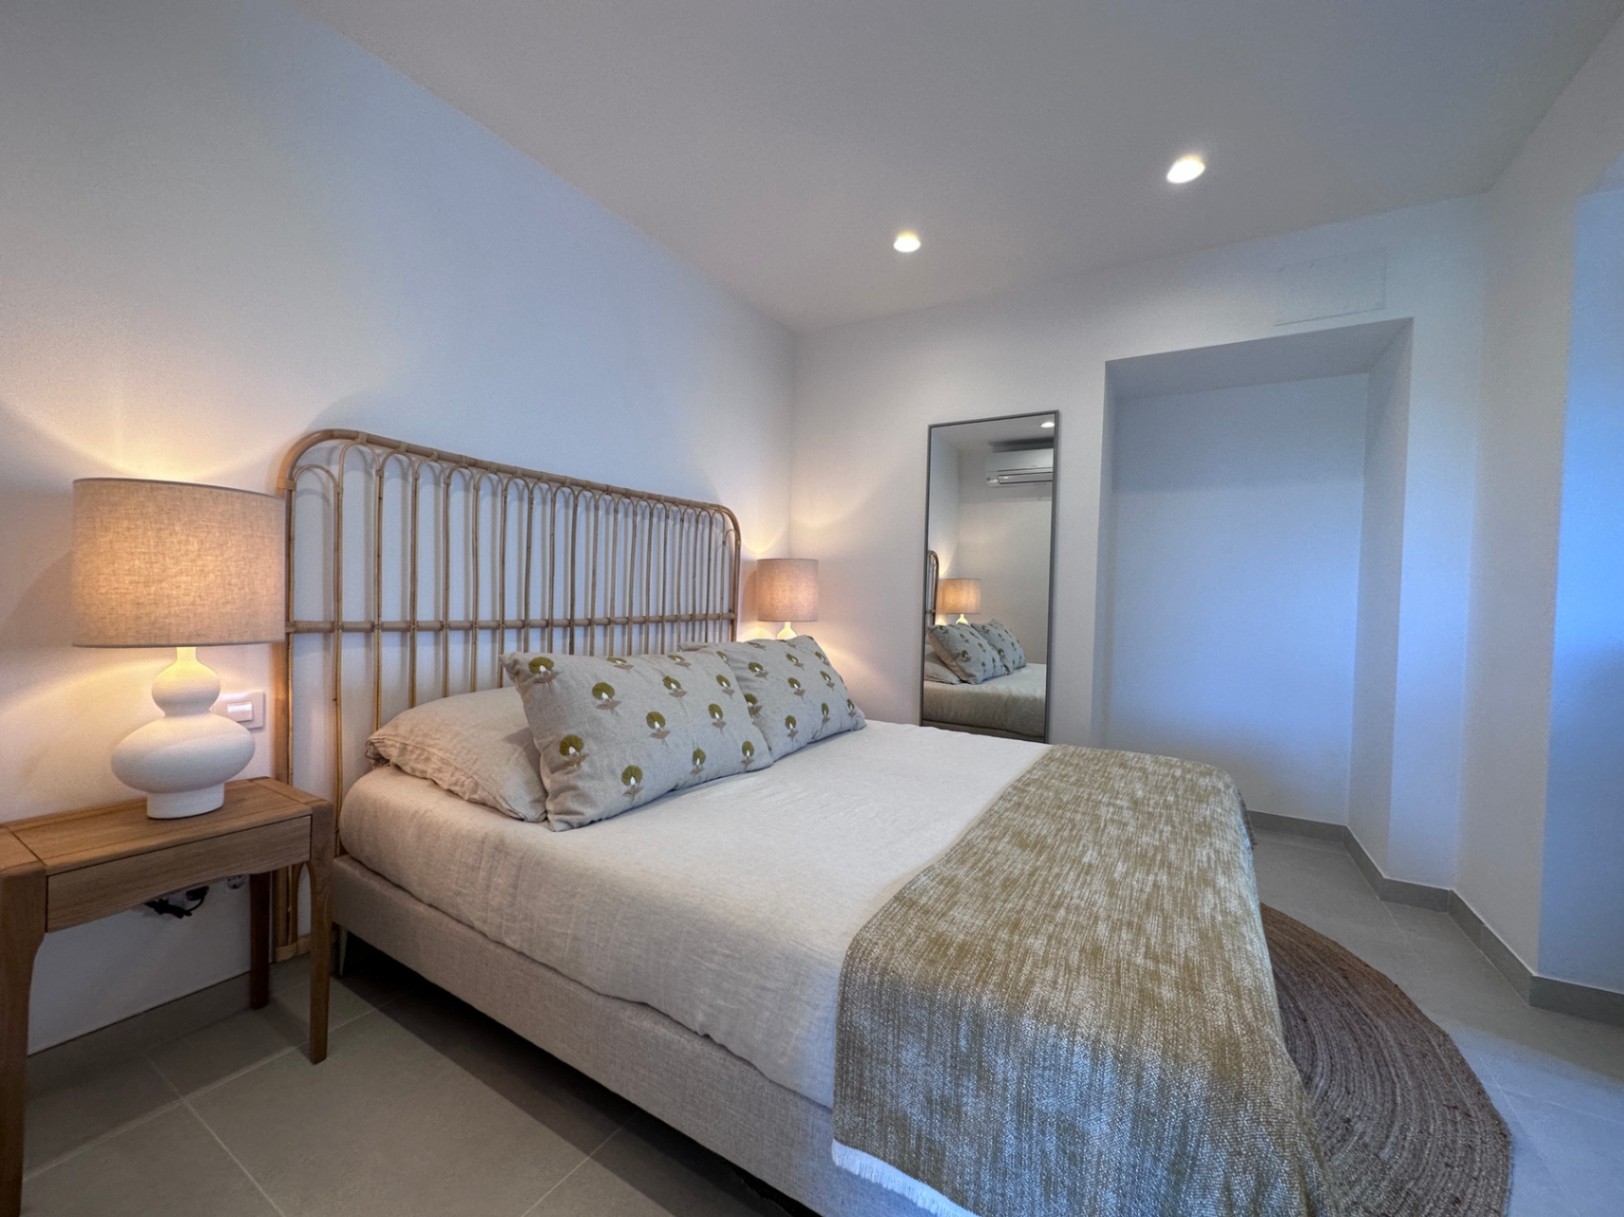 Vila de 4 dormitoris totalment reformada amb espectaculars vistes a la venda a Xàbia